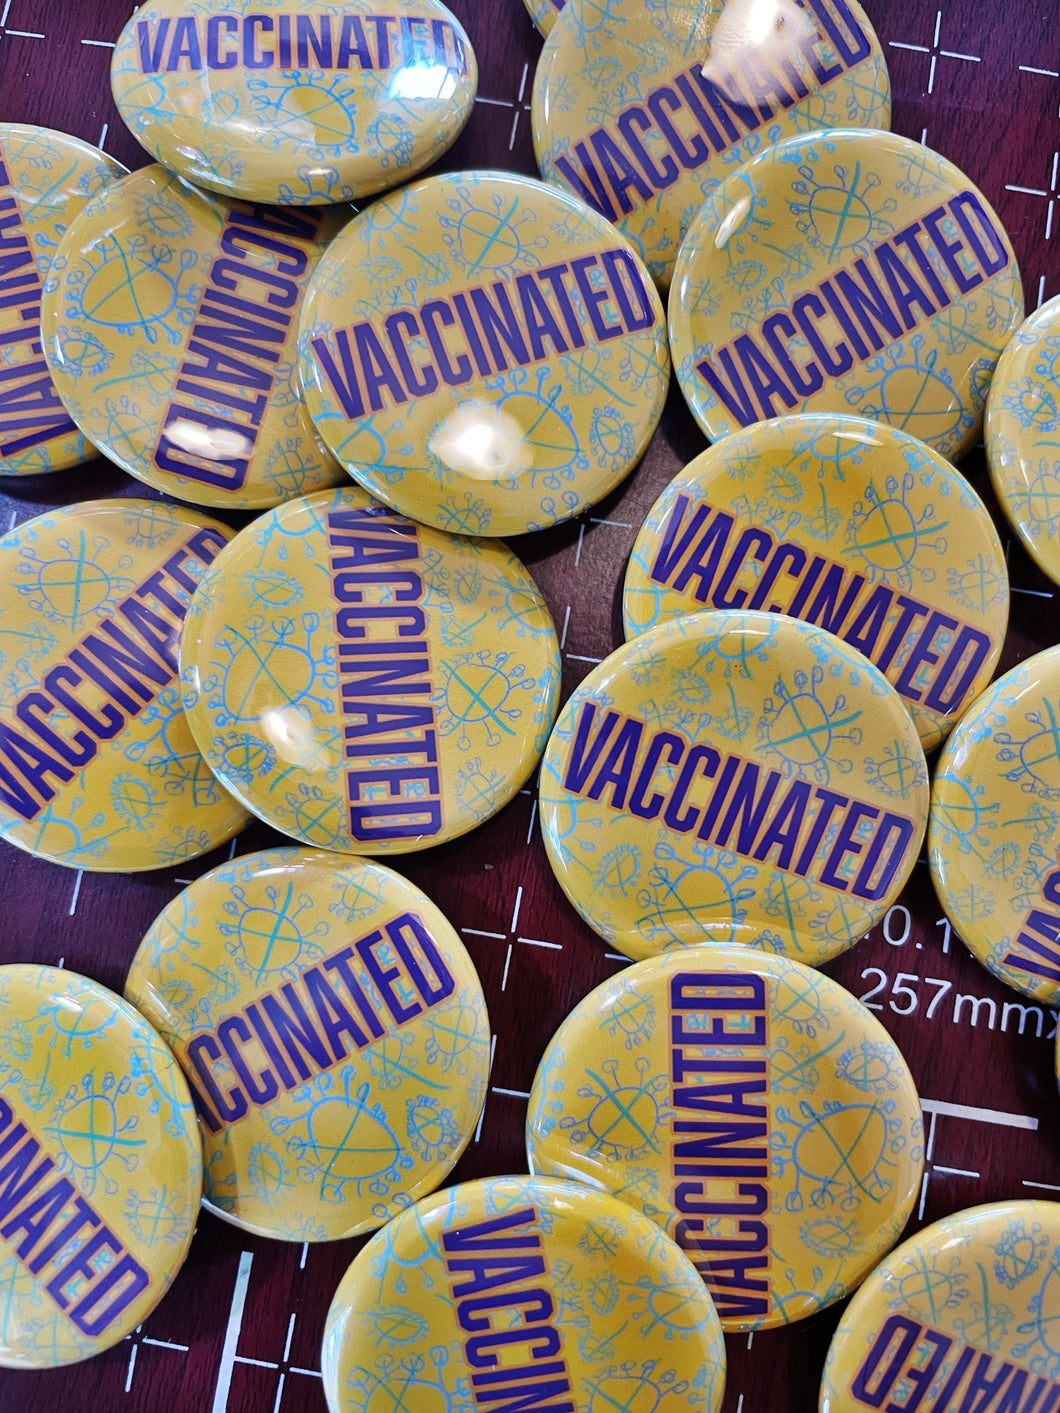 Vaccinated Button by Emitt Allen.